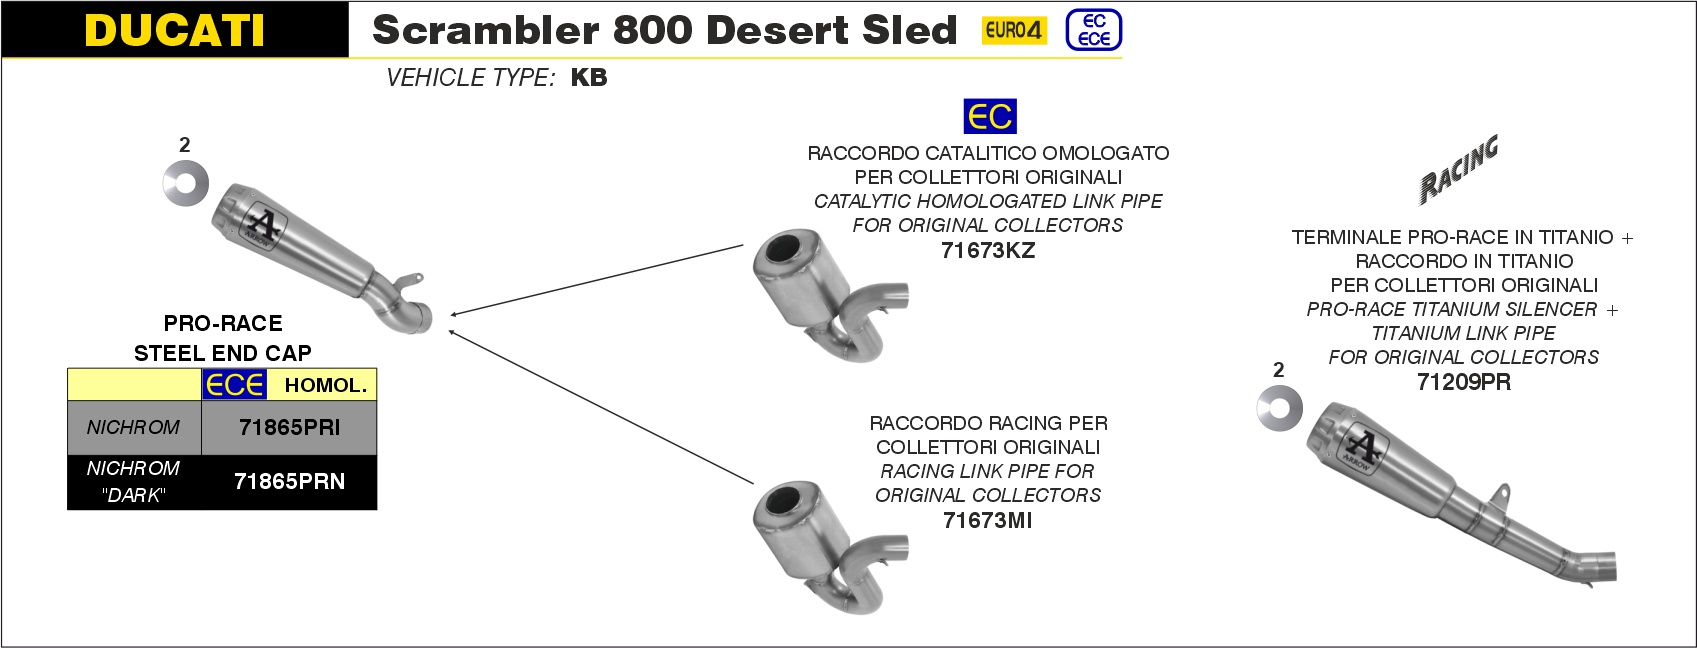  Ducati Scrambler 800 Desert Sled, Bj. 2017-2020 